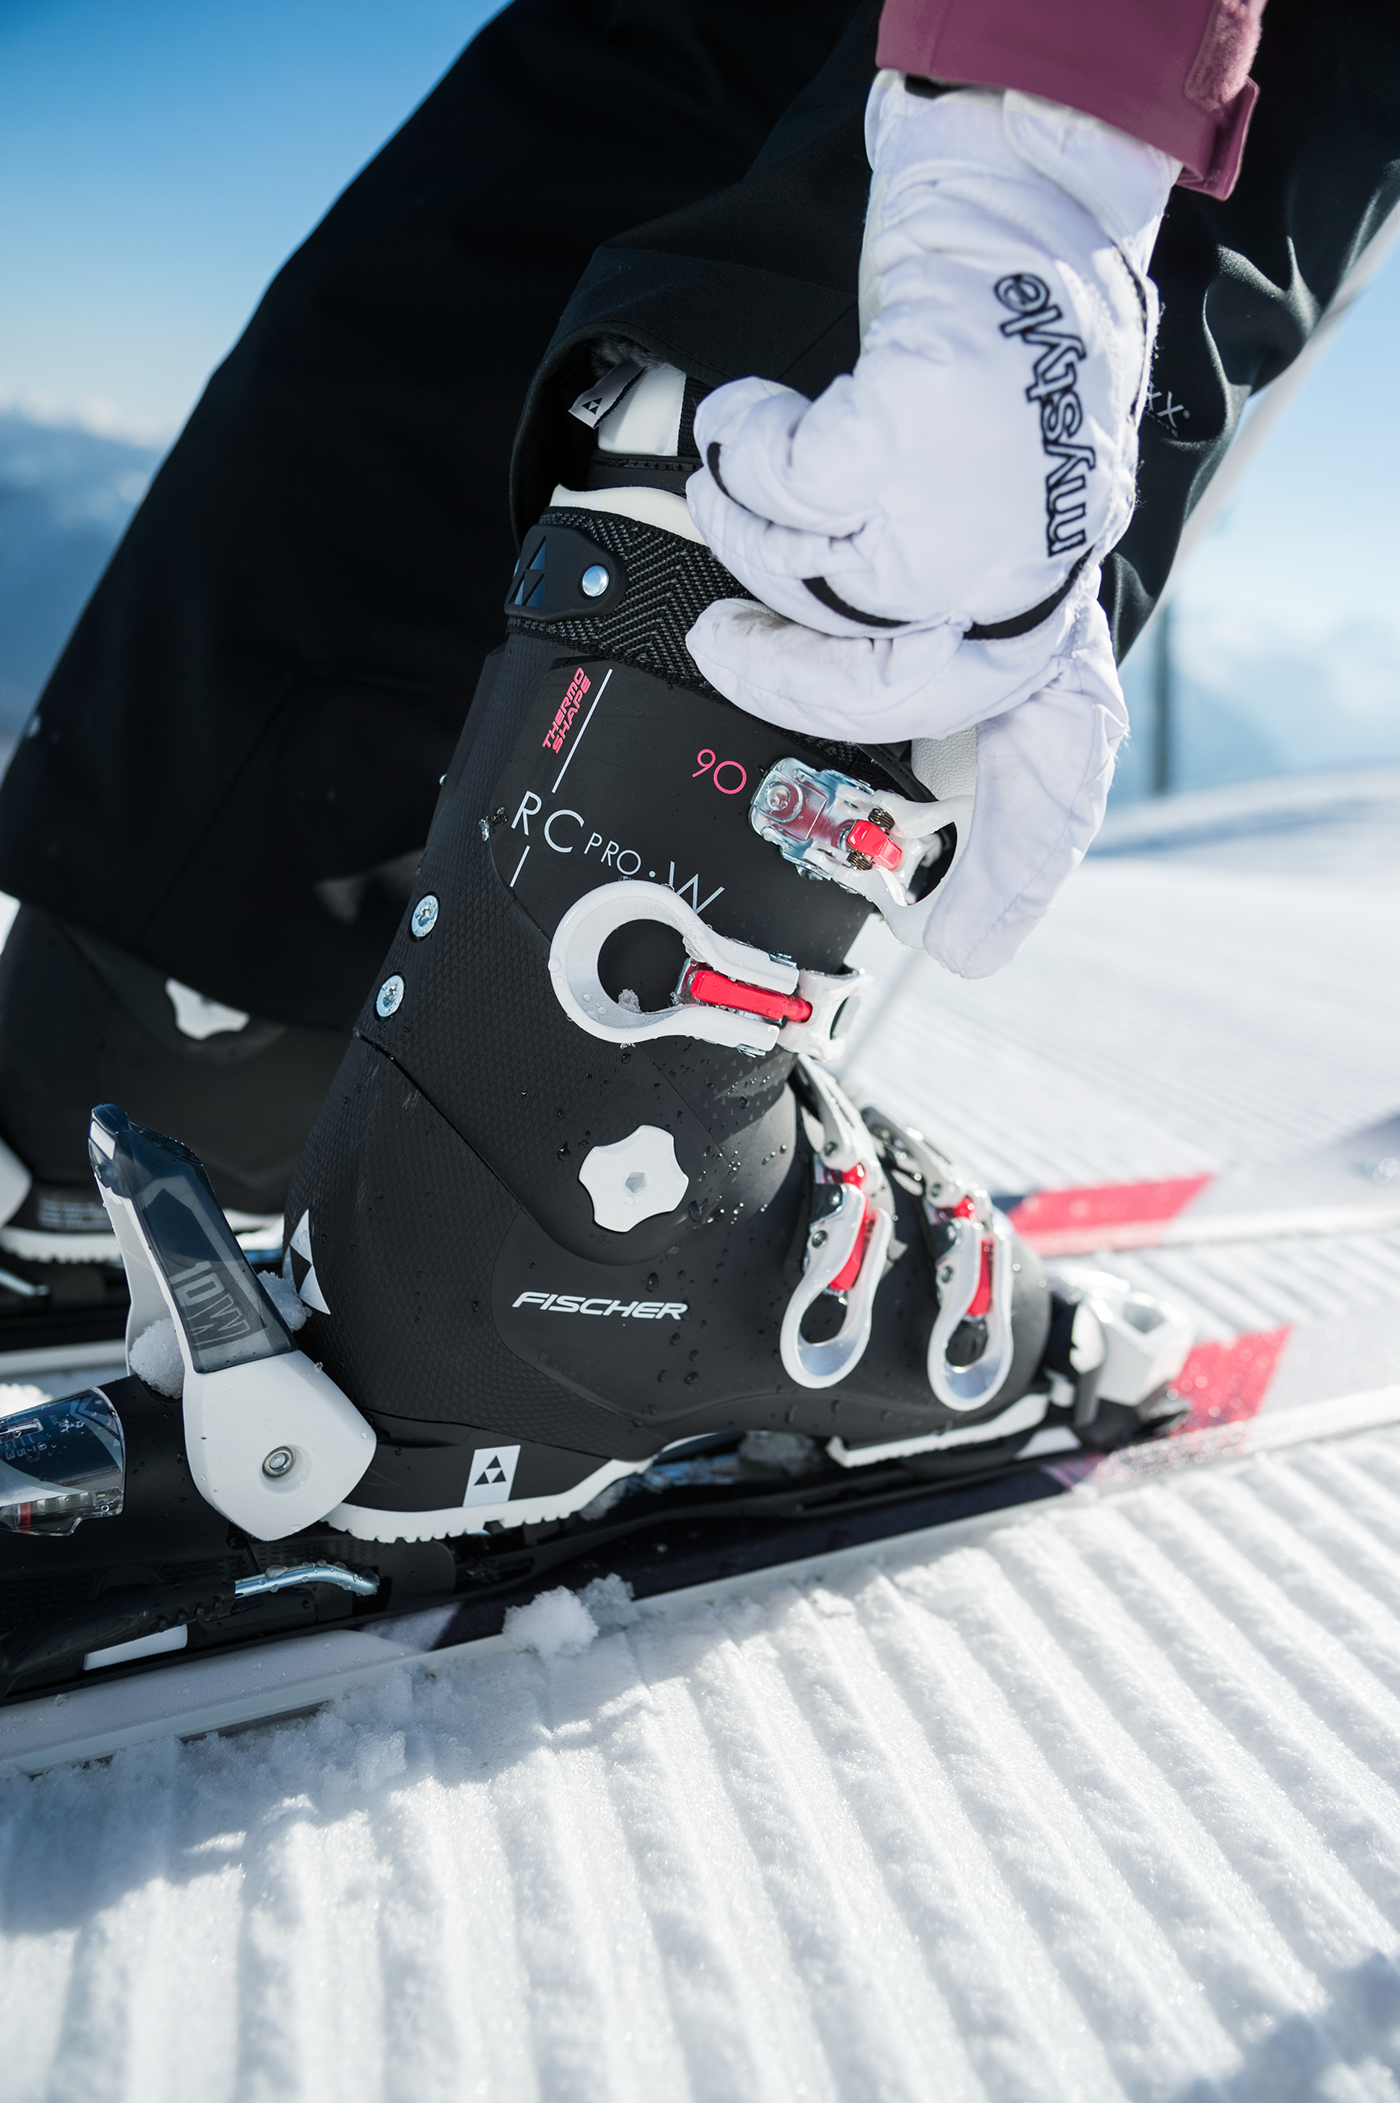 Adobe Portfolio design industrial design  graphic design  product design  art direction  branding  fischer ski boots alpine